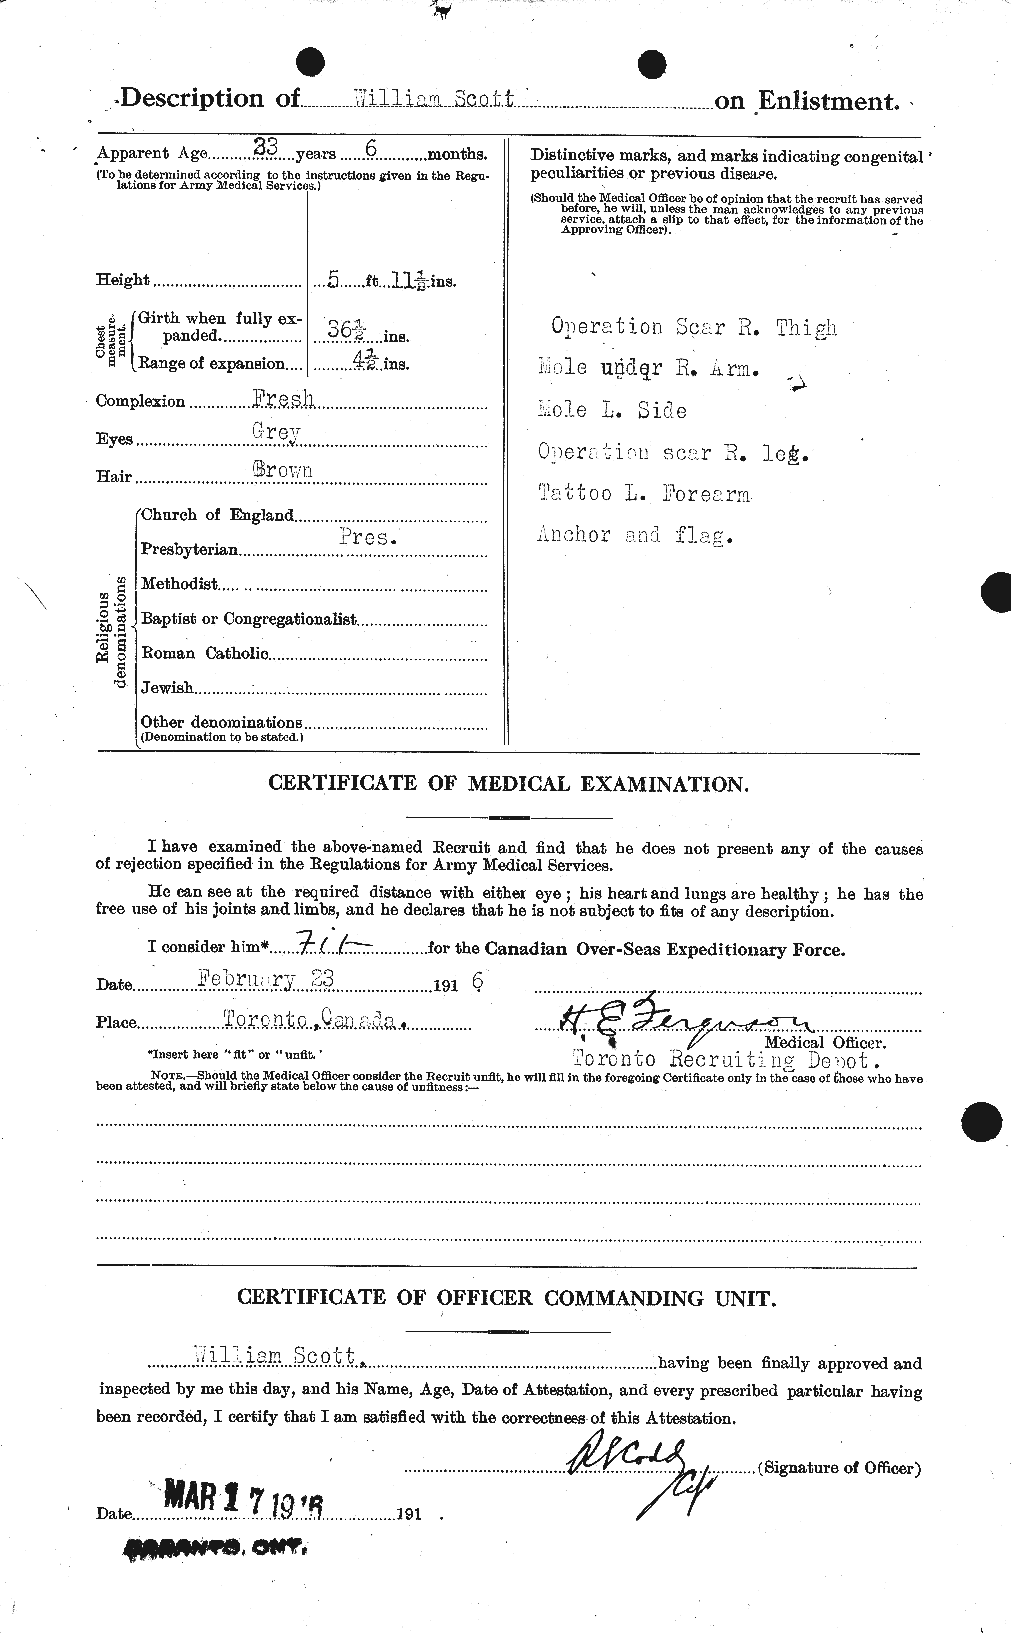 Dossiers du Personnel de la Première Guerre mondiale - CEC 087351b